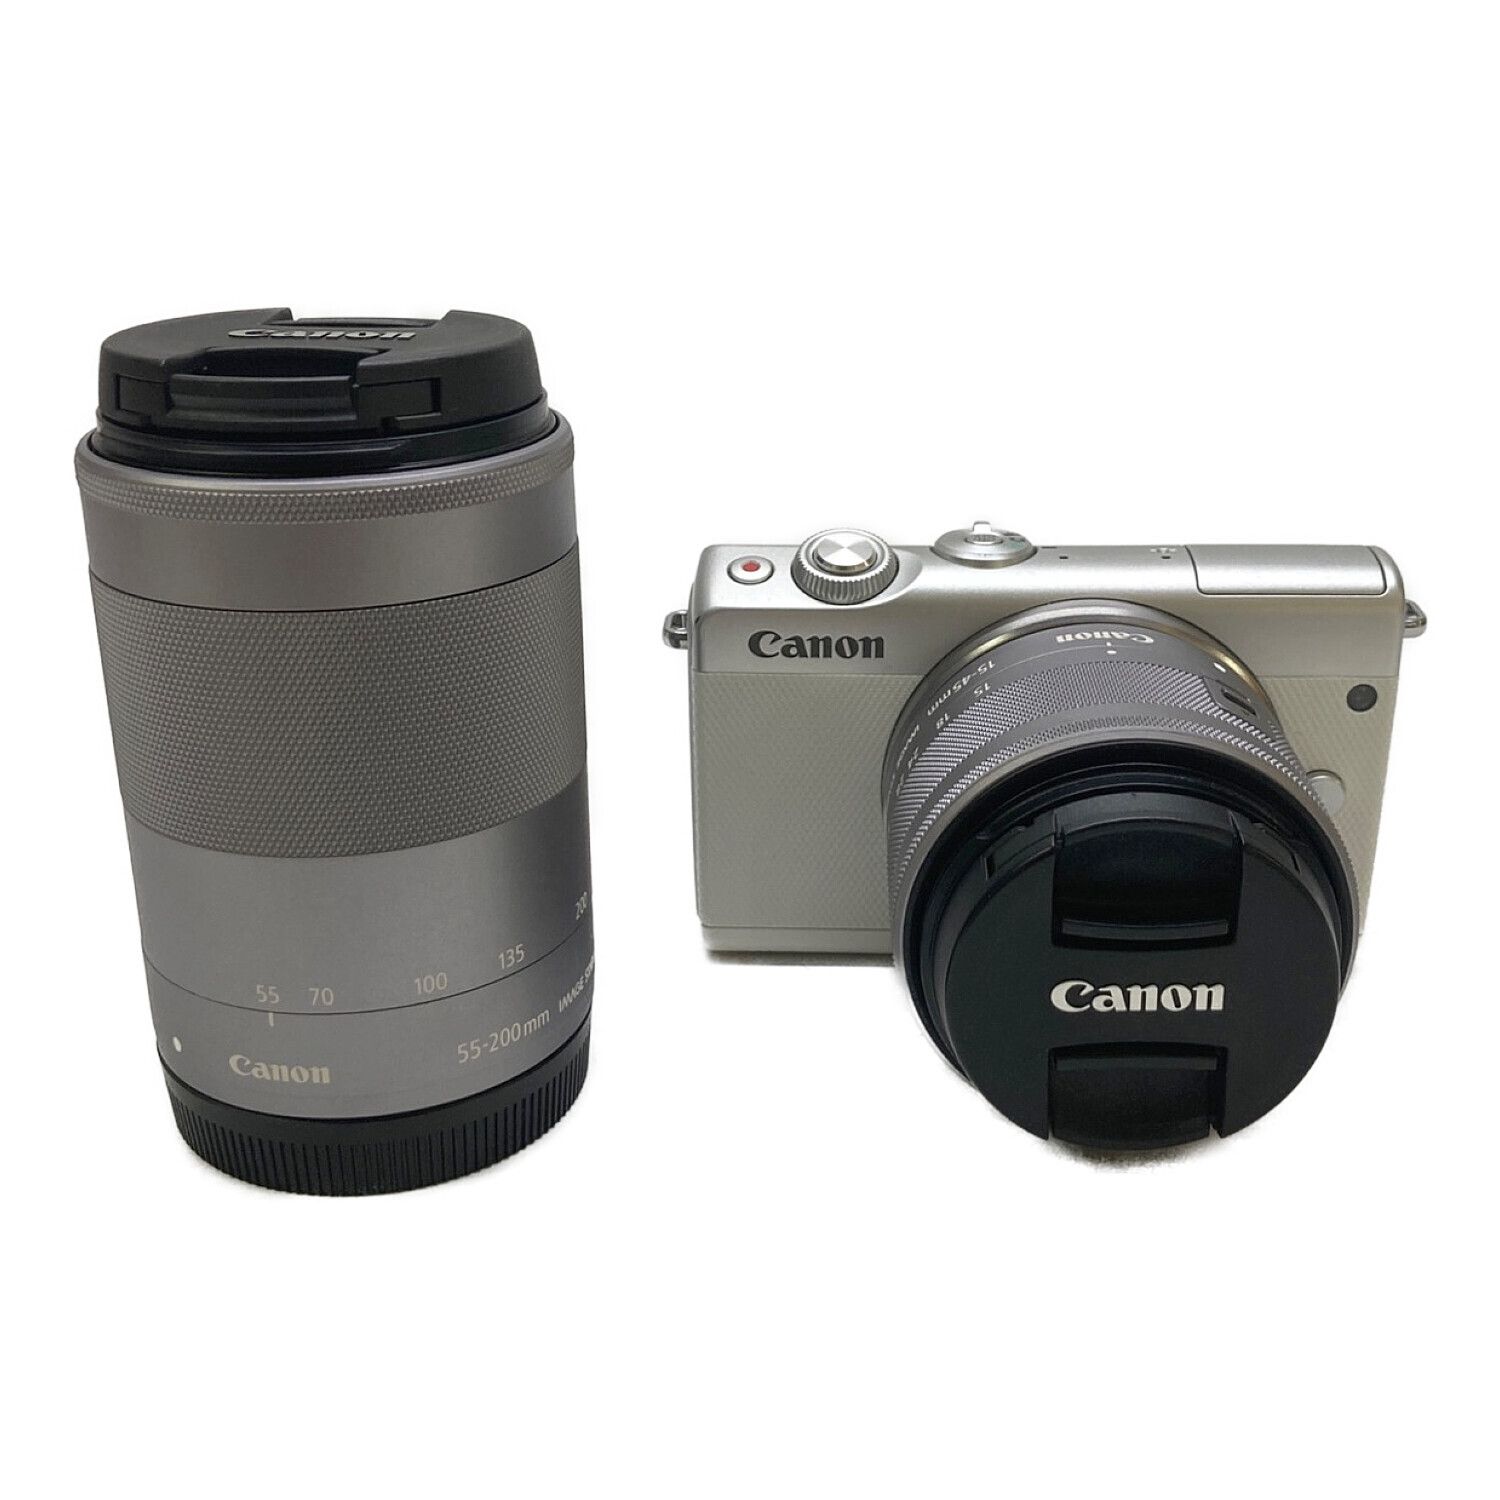 CANON (キャノン) ミラーレス一眼カメラ Canon EOS M100 ダブルズーム